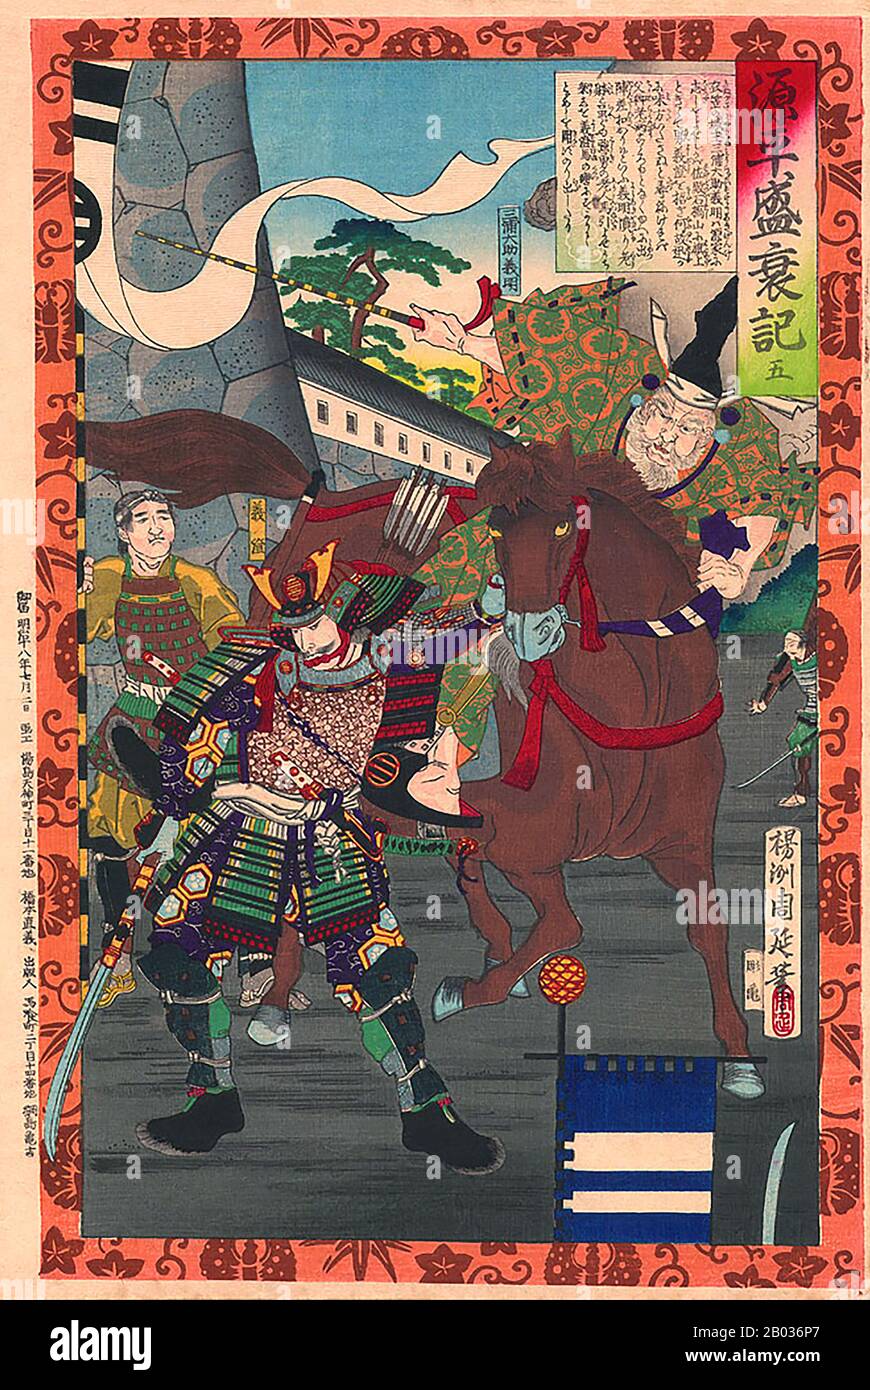 'Le Tale du Heike' est une épopée japonaise du conflit entre les clans de Minamoto et de Taira sur le contrôle du Japon qui s'est produit vers la fin du XIIe siècle ce, connu sous le nom de guerre de Genpei (1180-1185). Le conte est souvent décrit comme un japonais 'Iliad', et a été traduit en anglais plusieurs fois. La guerre de Genpei a eu lieu à la fin de la Période Heian, et a finalement vu la chute du clan Taira et la montée du clan Minamoto. Minamoto no Yoritomo, chef de clan, a ensuite établi le shogunat Kamakura, qui régnerait sur le Japon pendant environ 150 ans. Le shogu Kamakura Banque D'Images